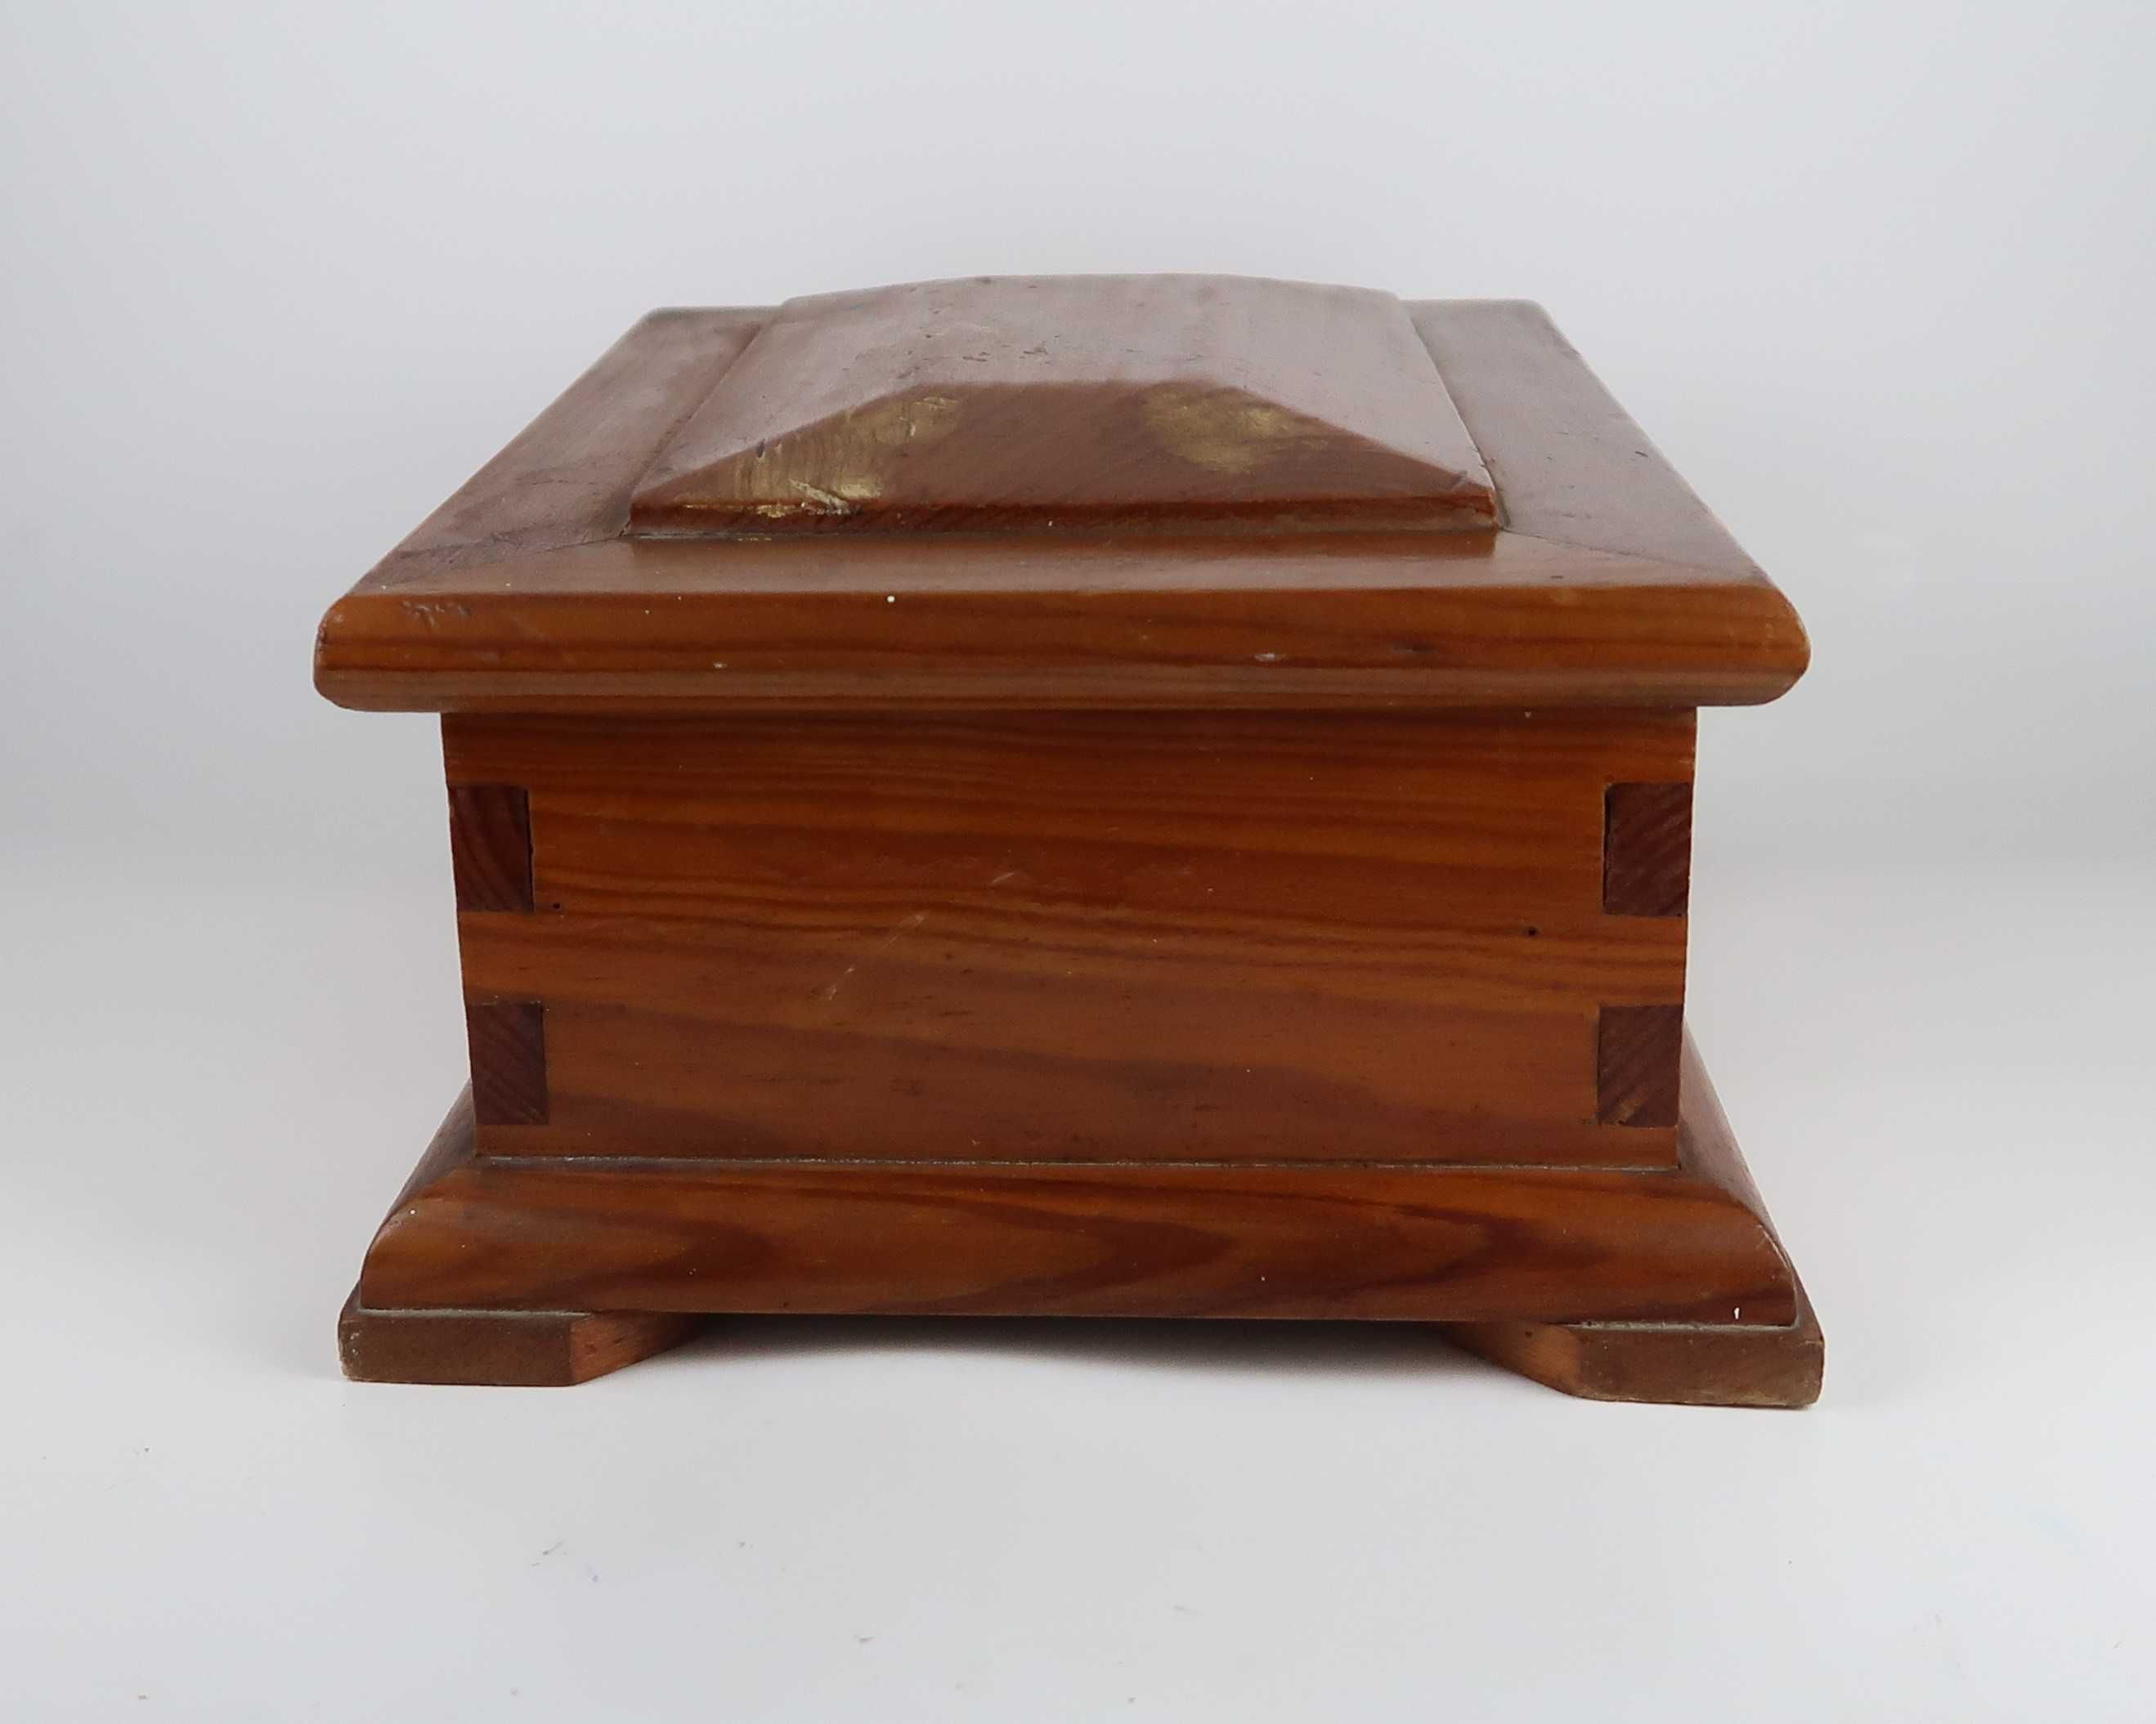 Caixa antiga em madeira - 21x29.5x13(A) cm.